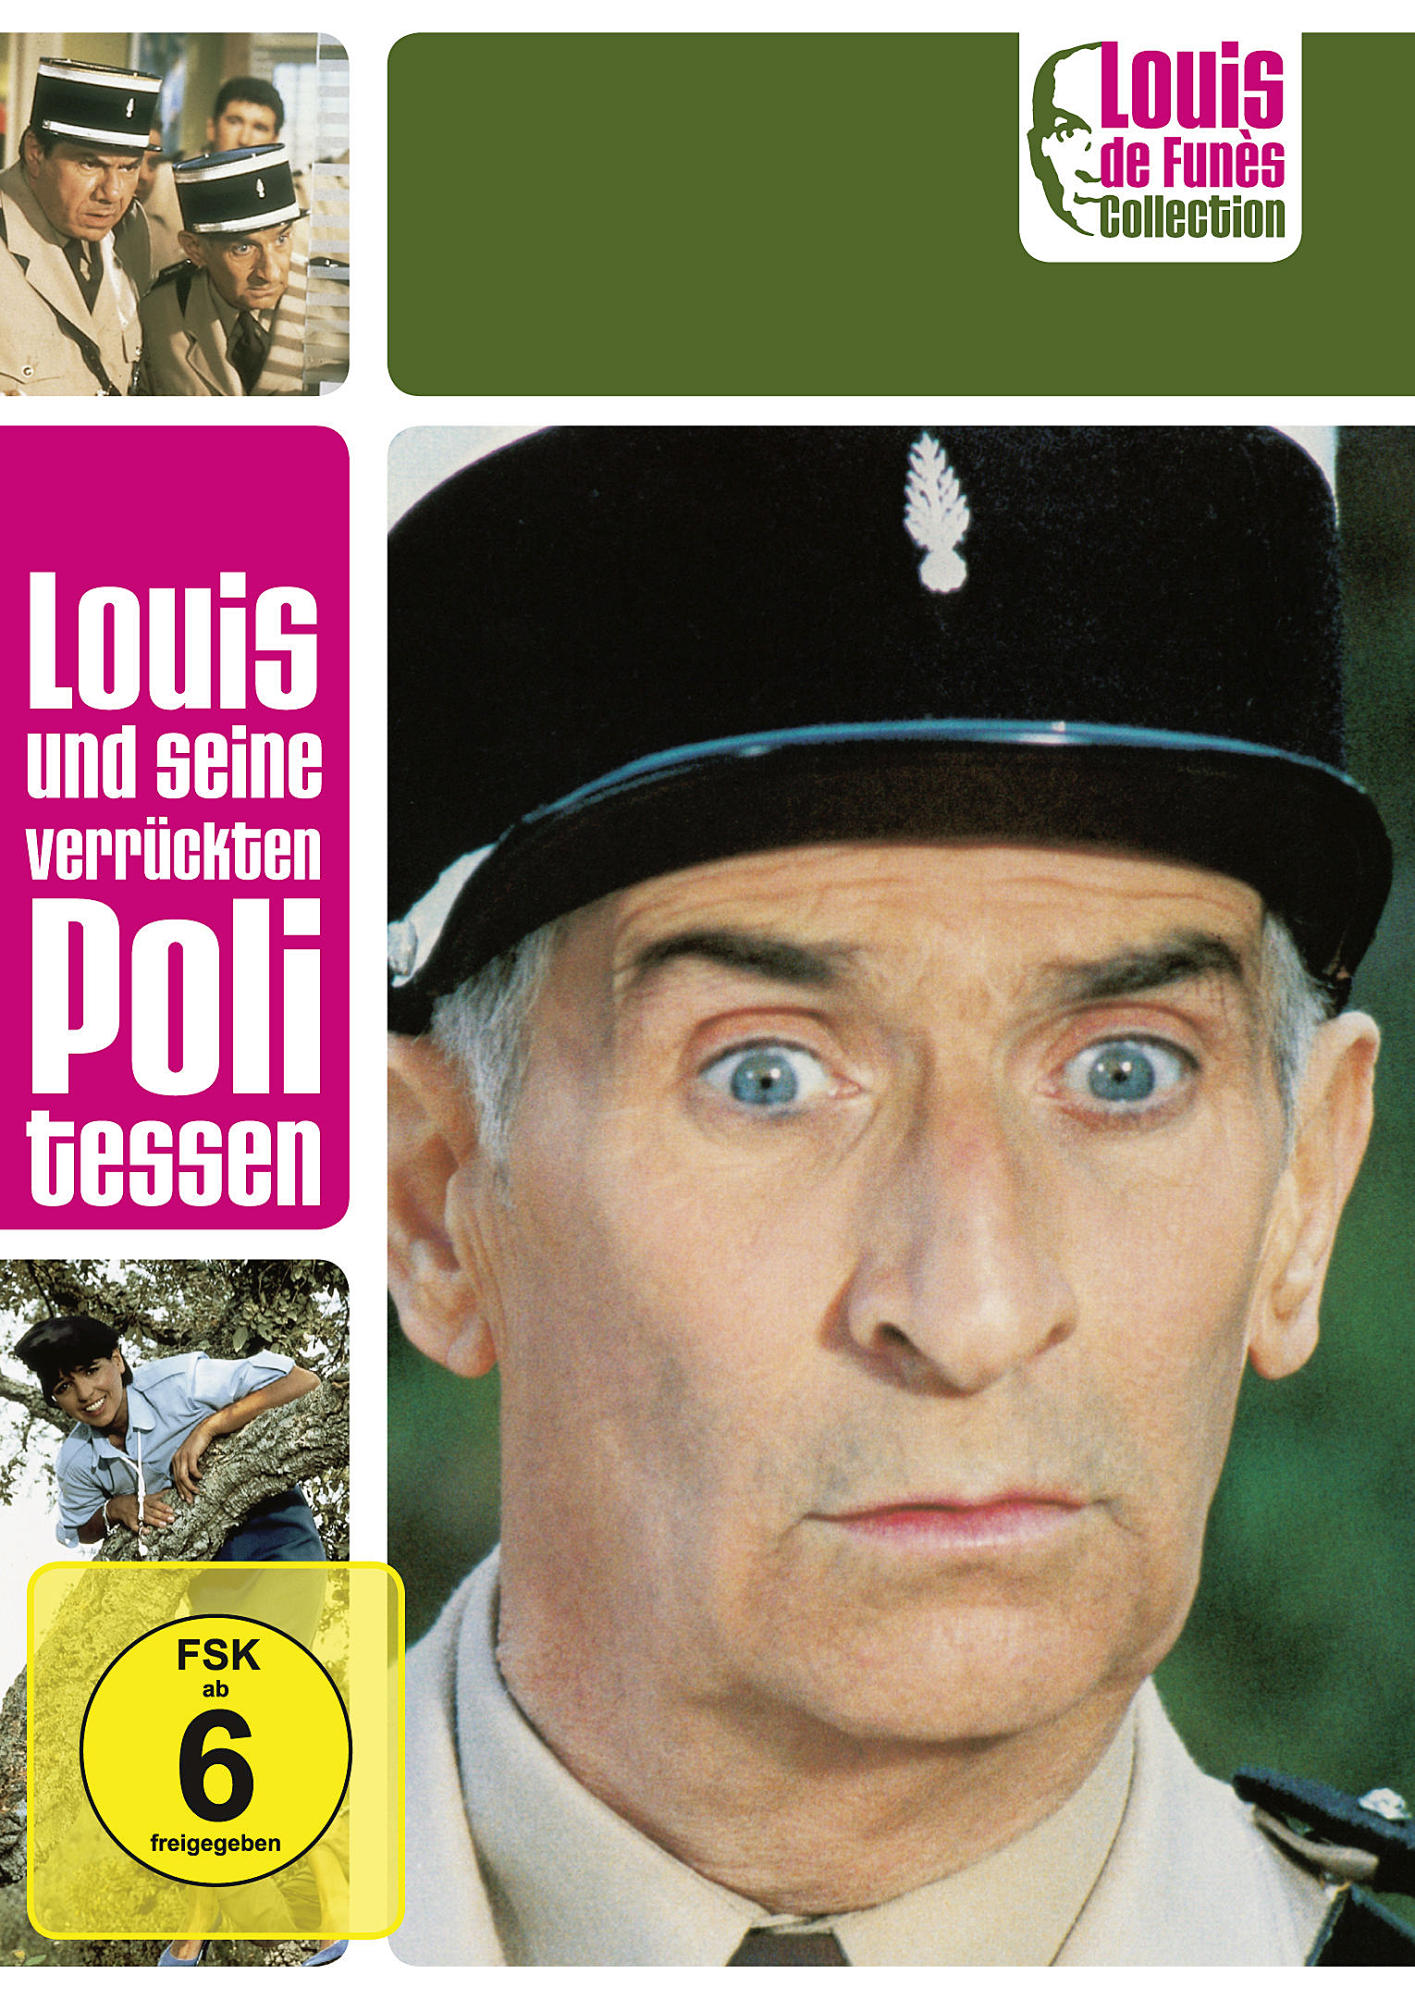 Louis und seine verrückten de Collection Politessen Funès DVD - Louis